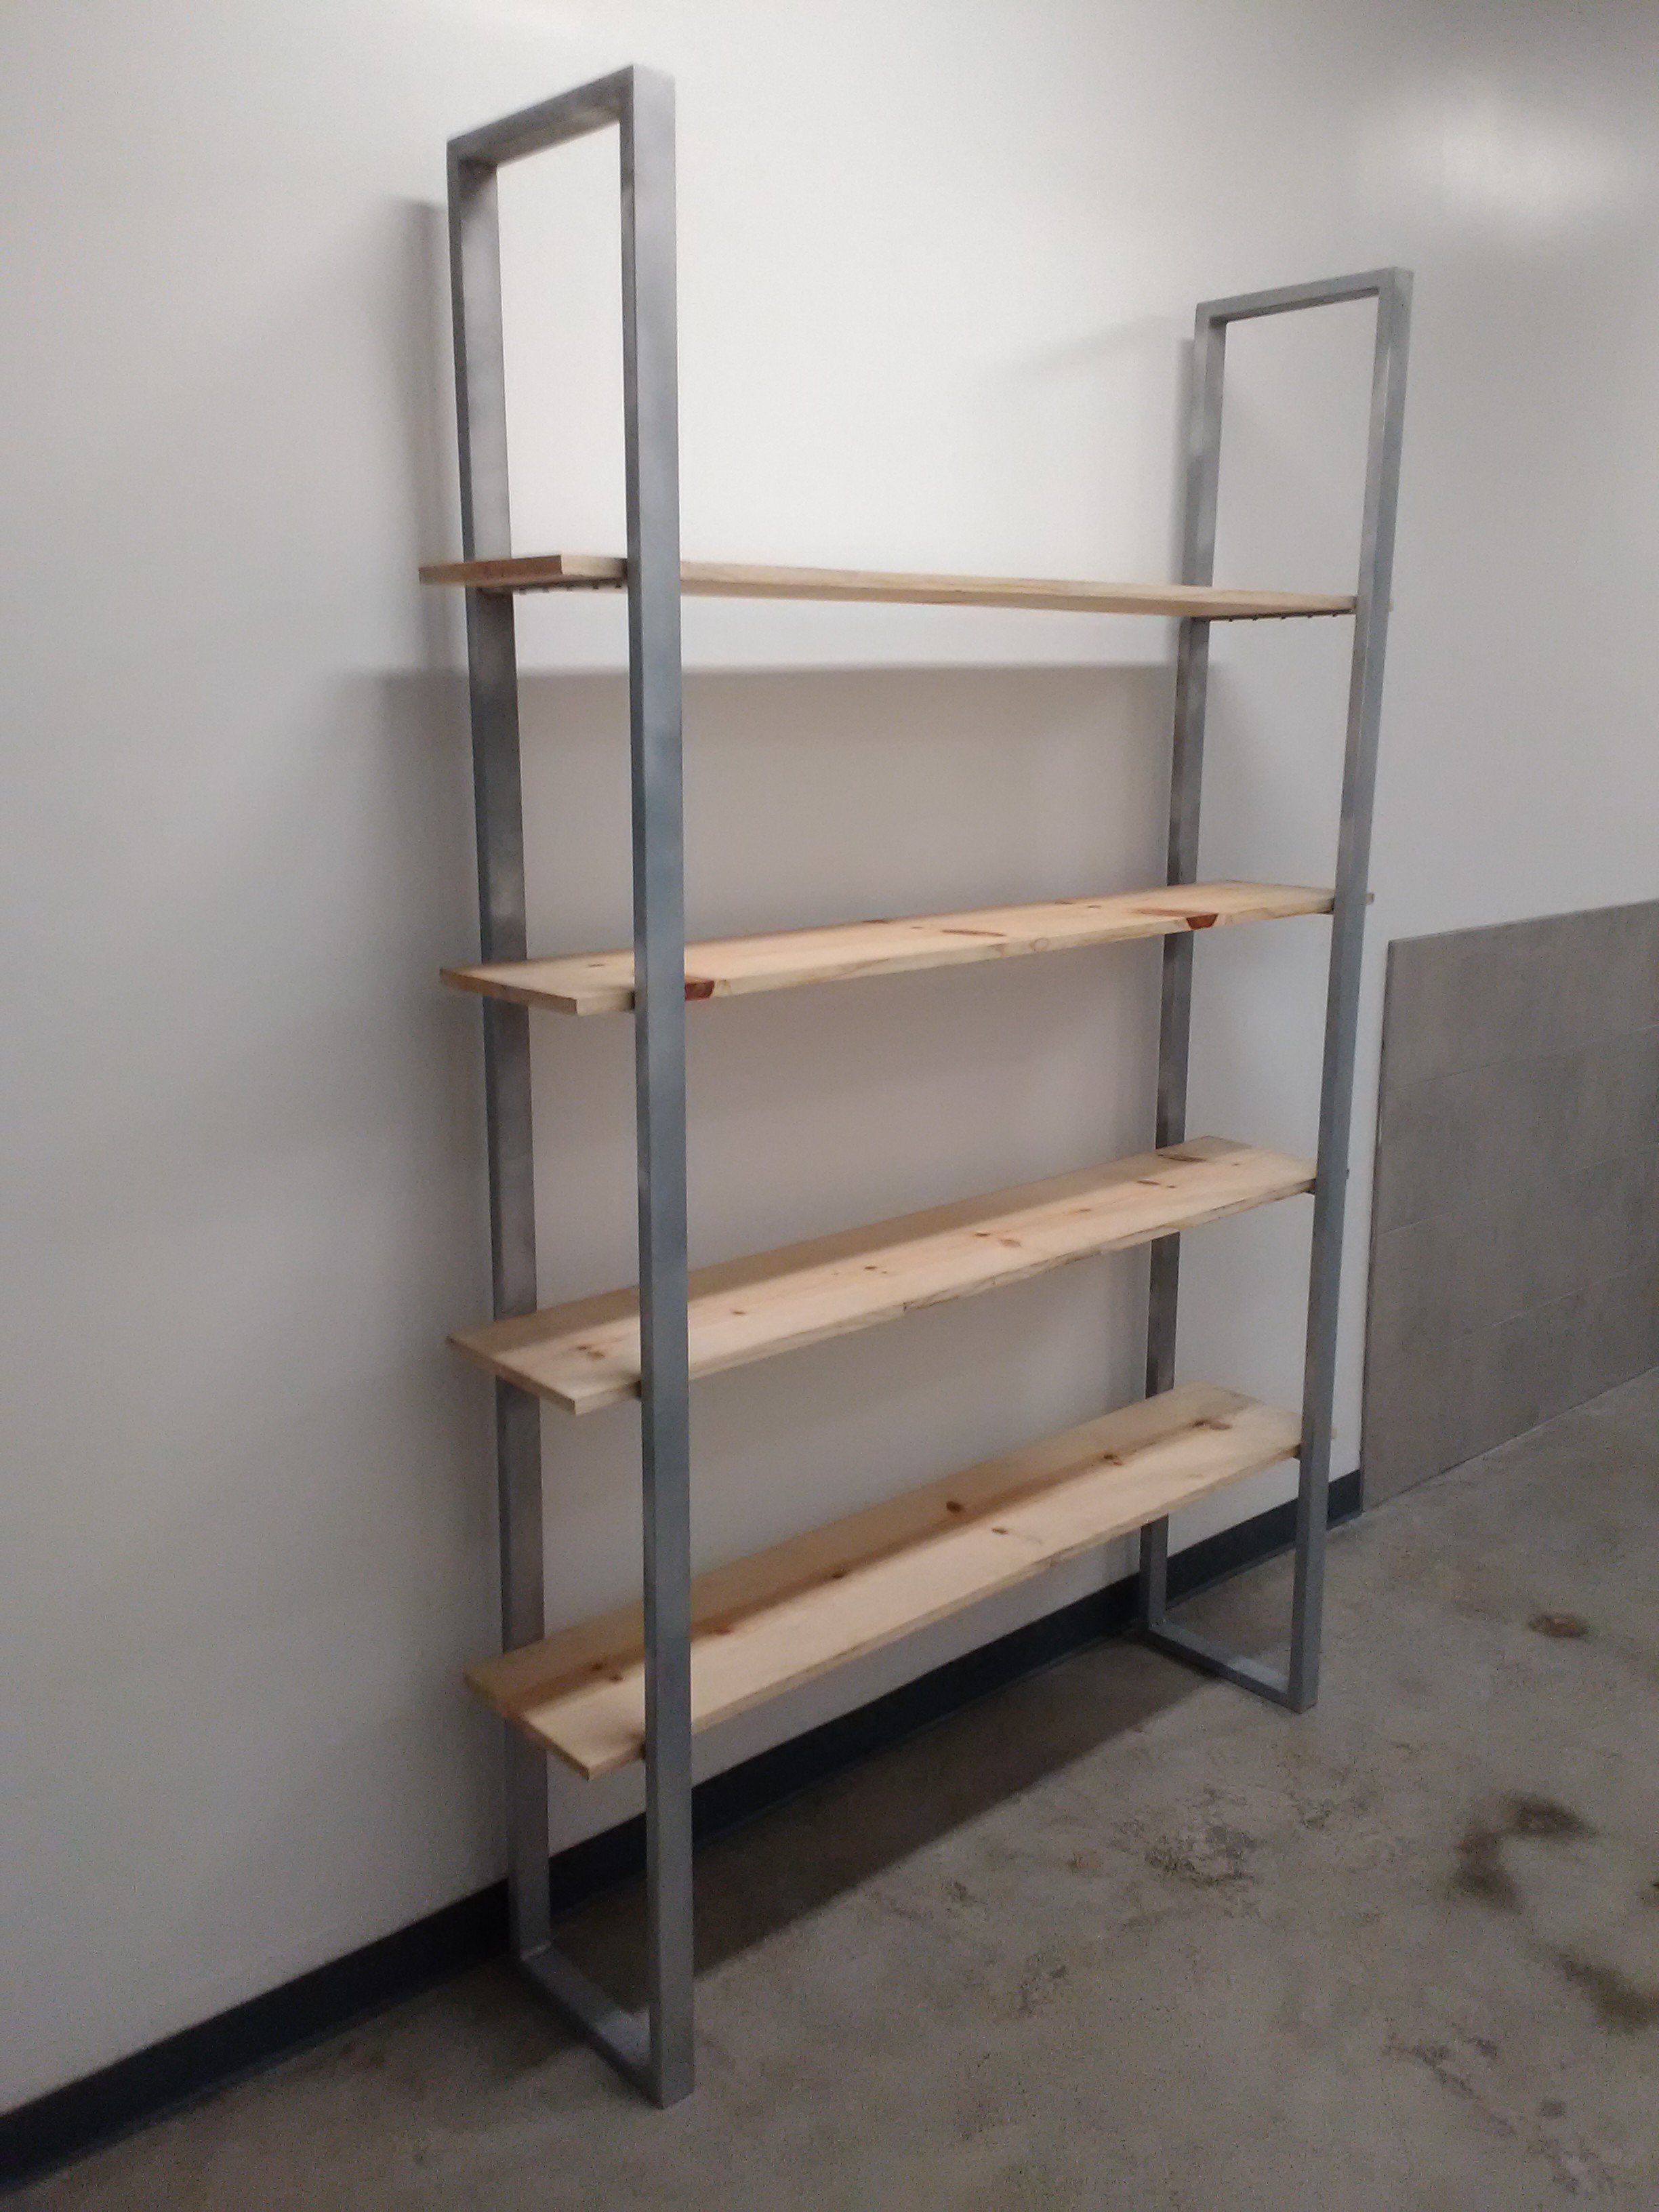 Steel Wood Shelf